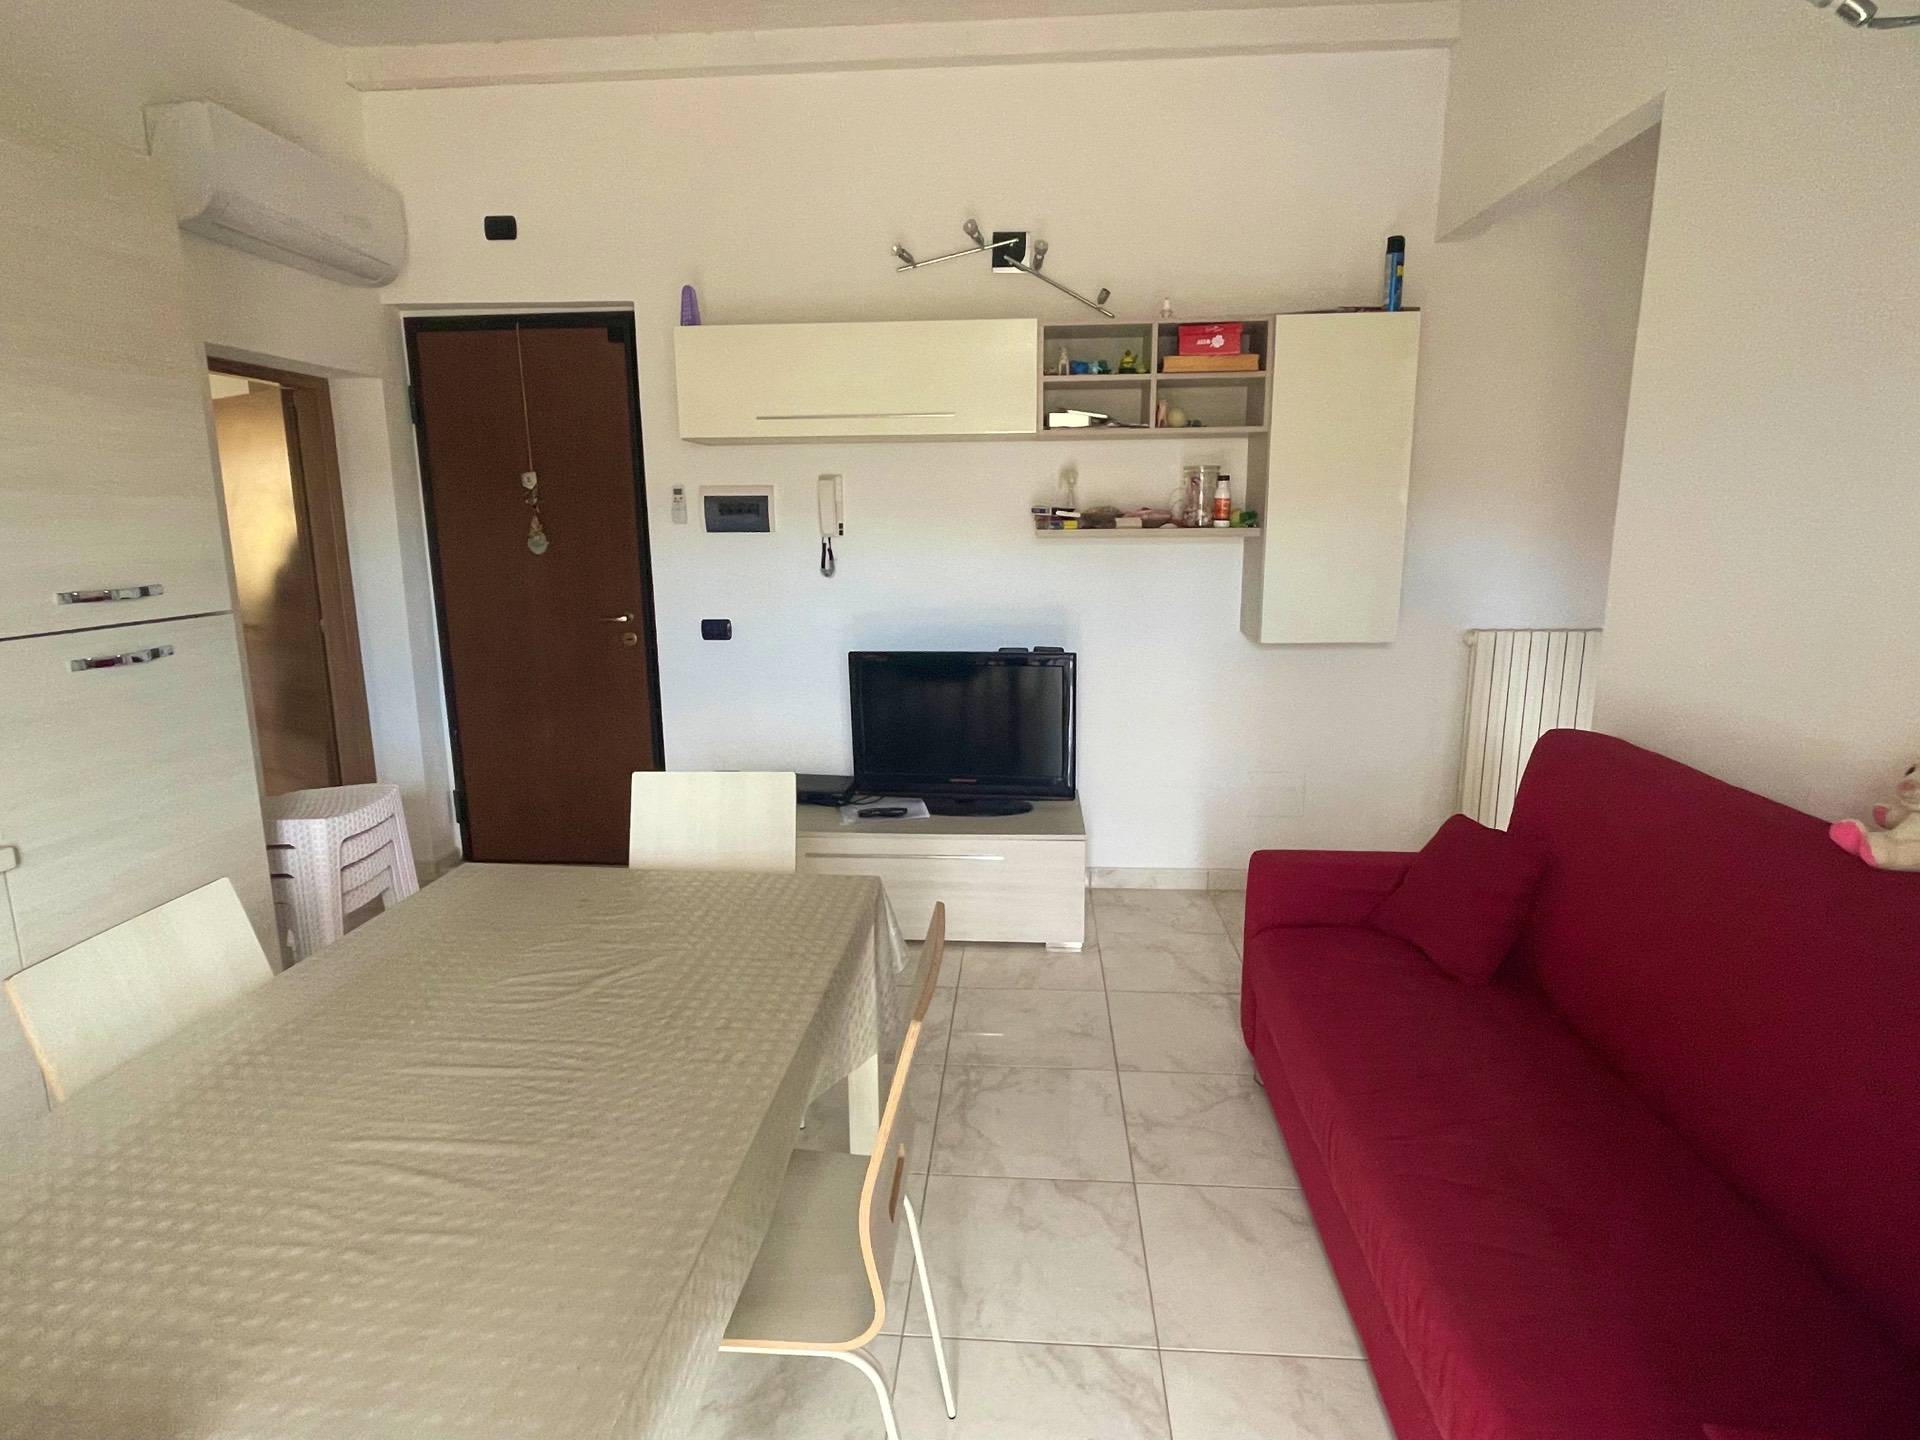 Appartamento in vendita a San Benedetto del Tronto, 4 locali, zona Località: PortodAscoli, prezzo € 250.000 | PortaleAgenzieImmobiliari.it